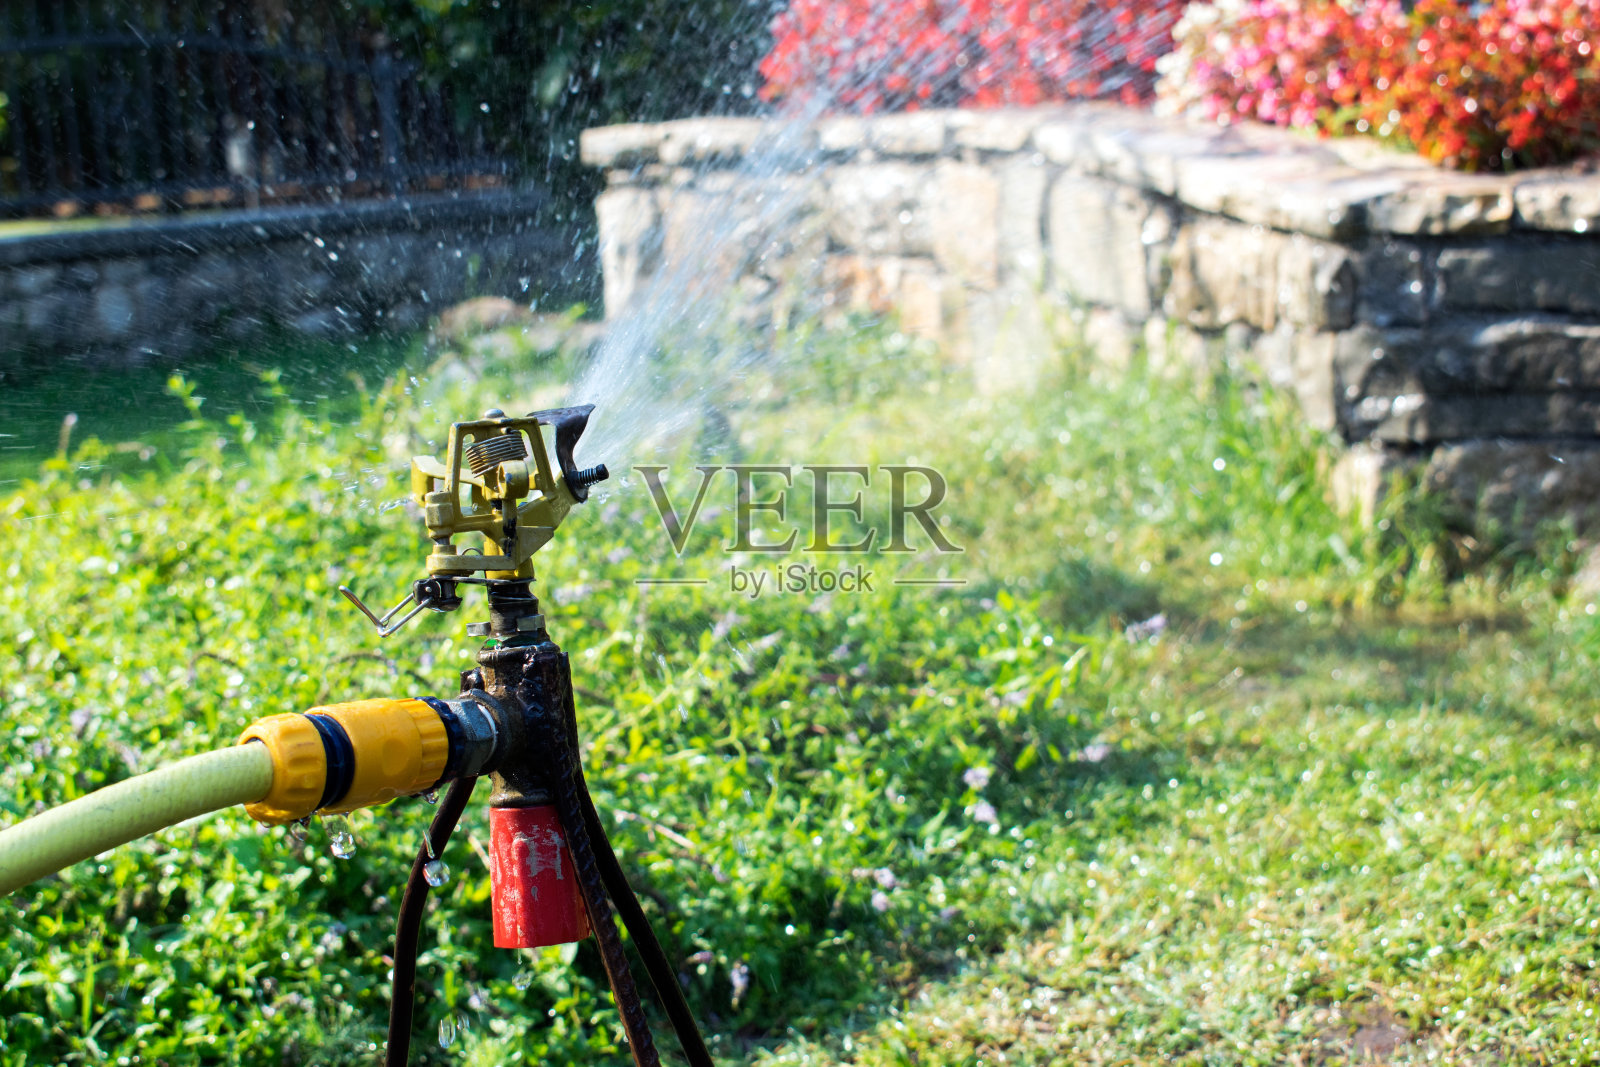 花园灌溉系统浇灌草坪。浇水喷雾器照片摄影图片